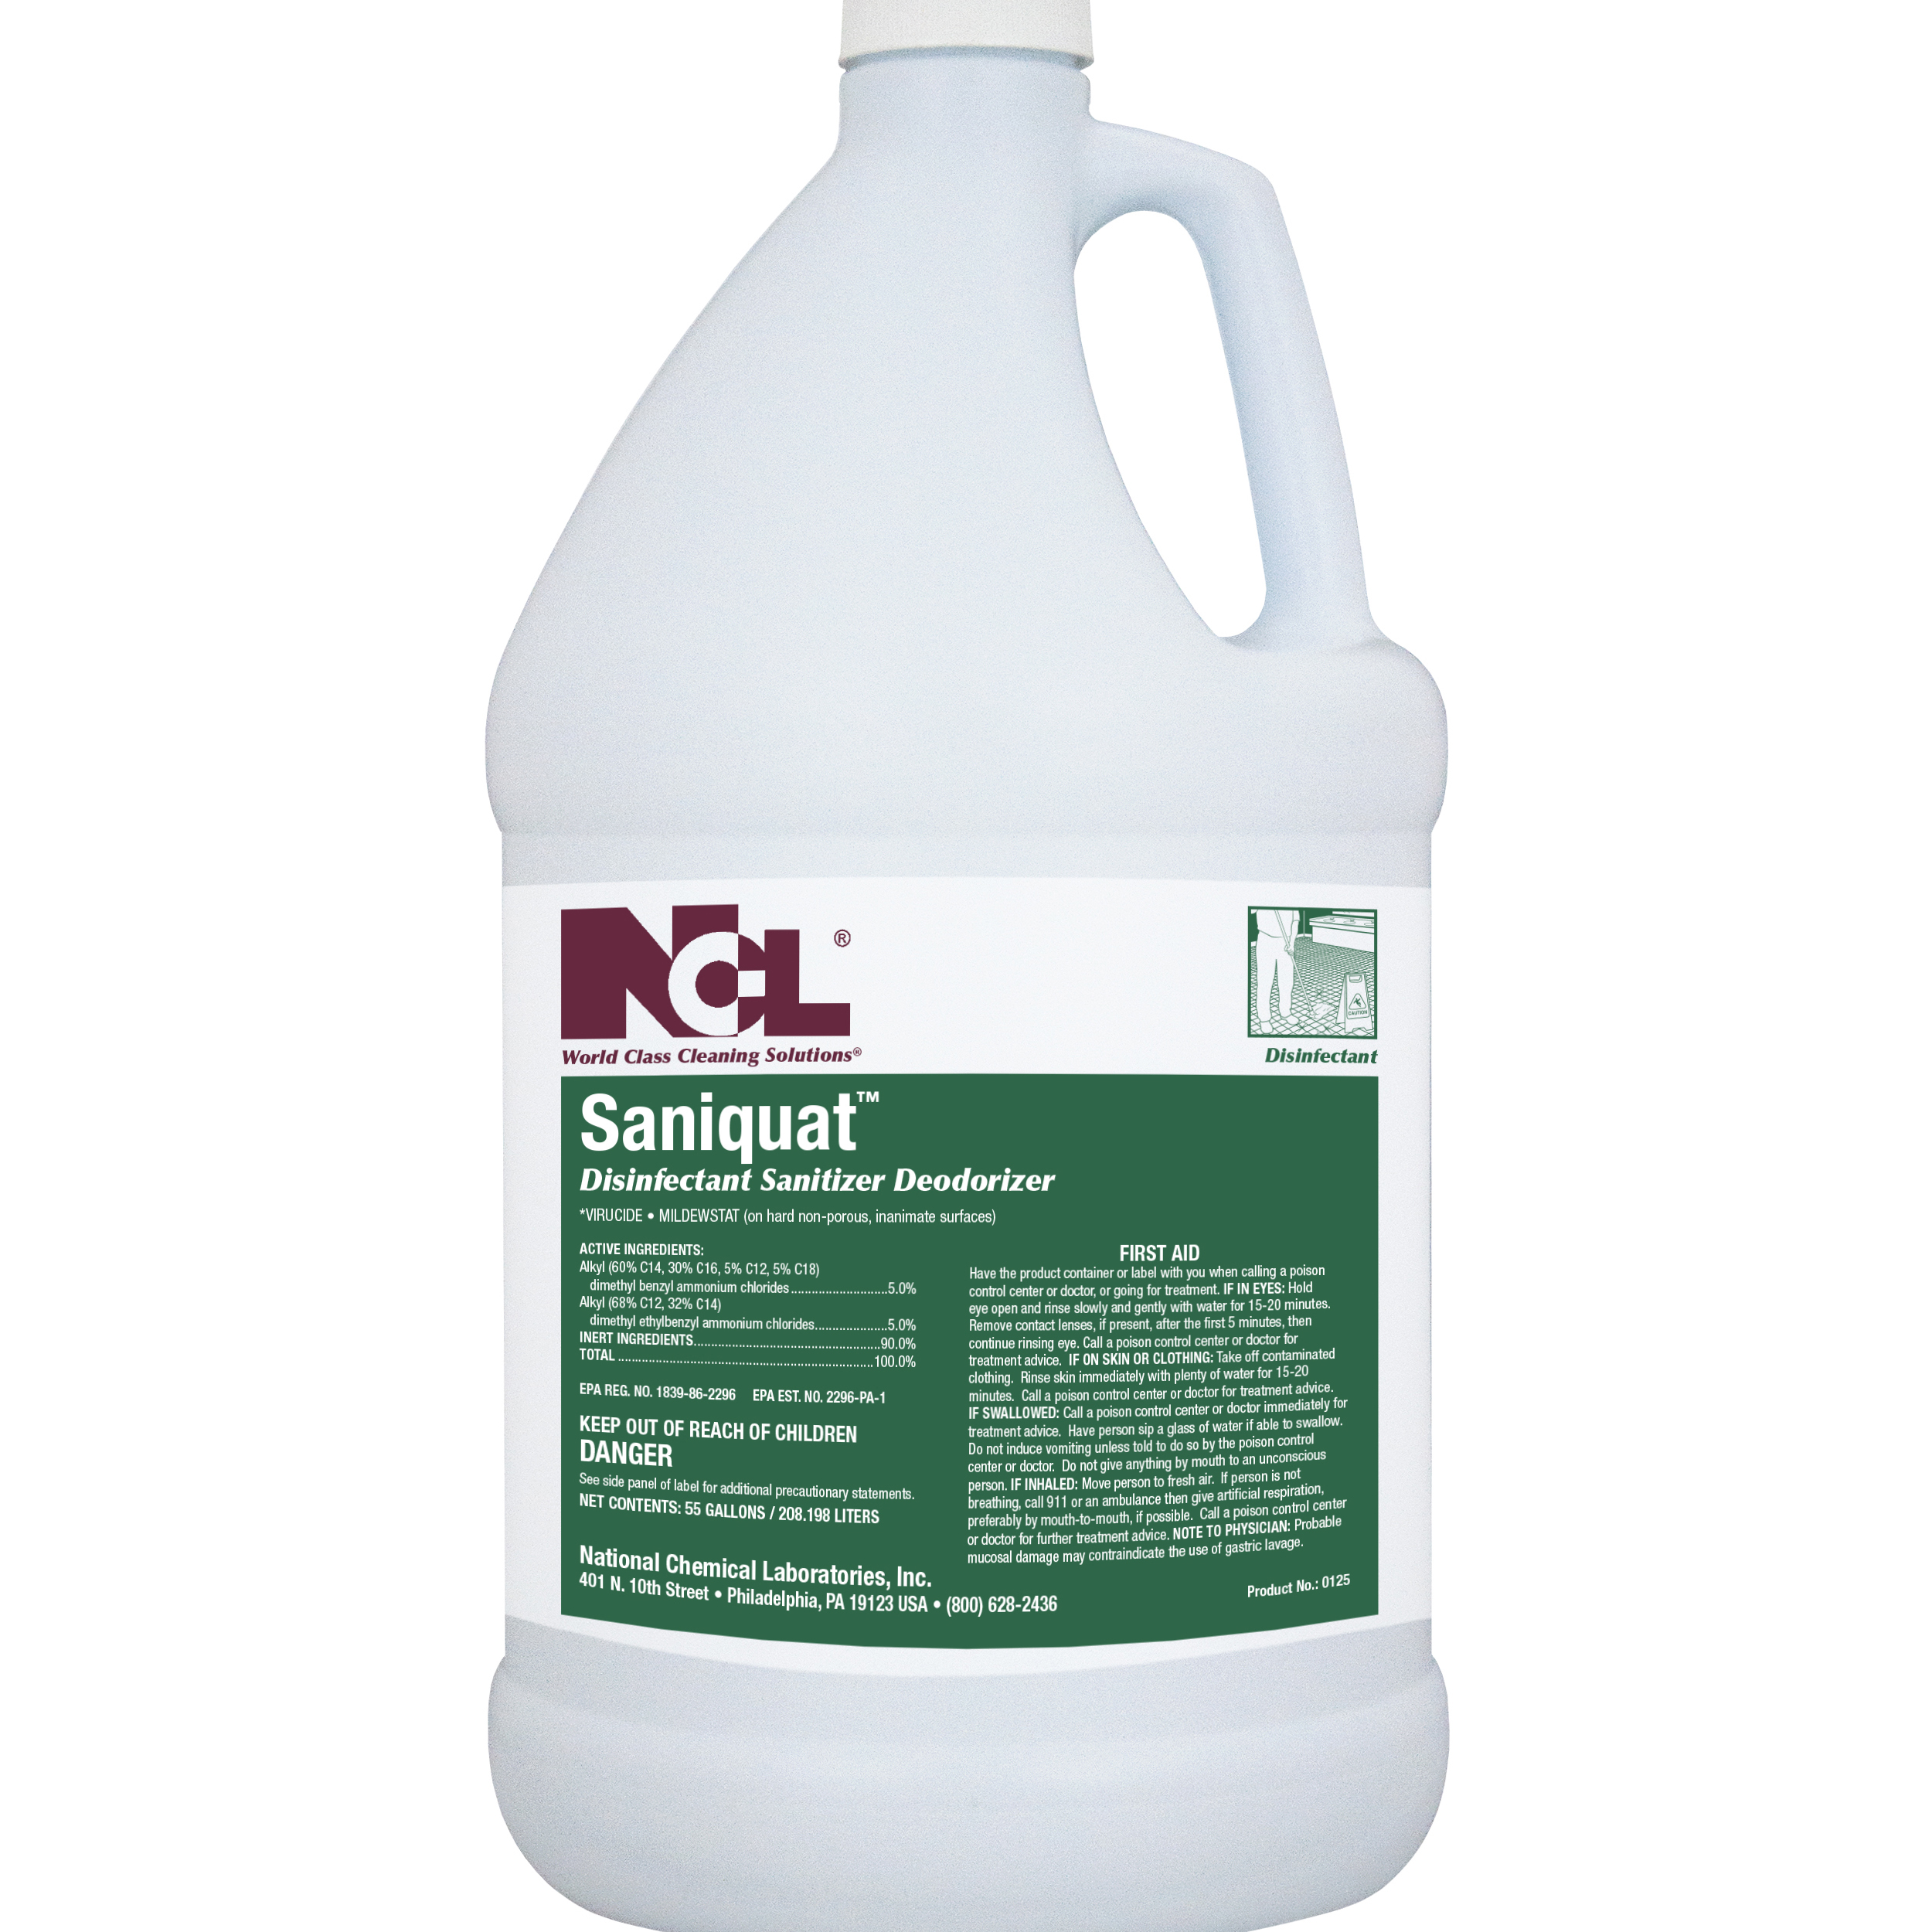  SANIQUAT Disinfectant Sanitizer Deodorizer 4/1 Gal. Case (NCL0125-29) 